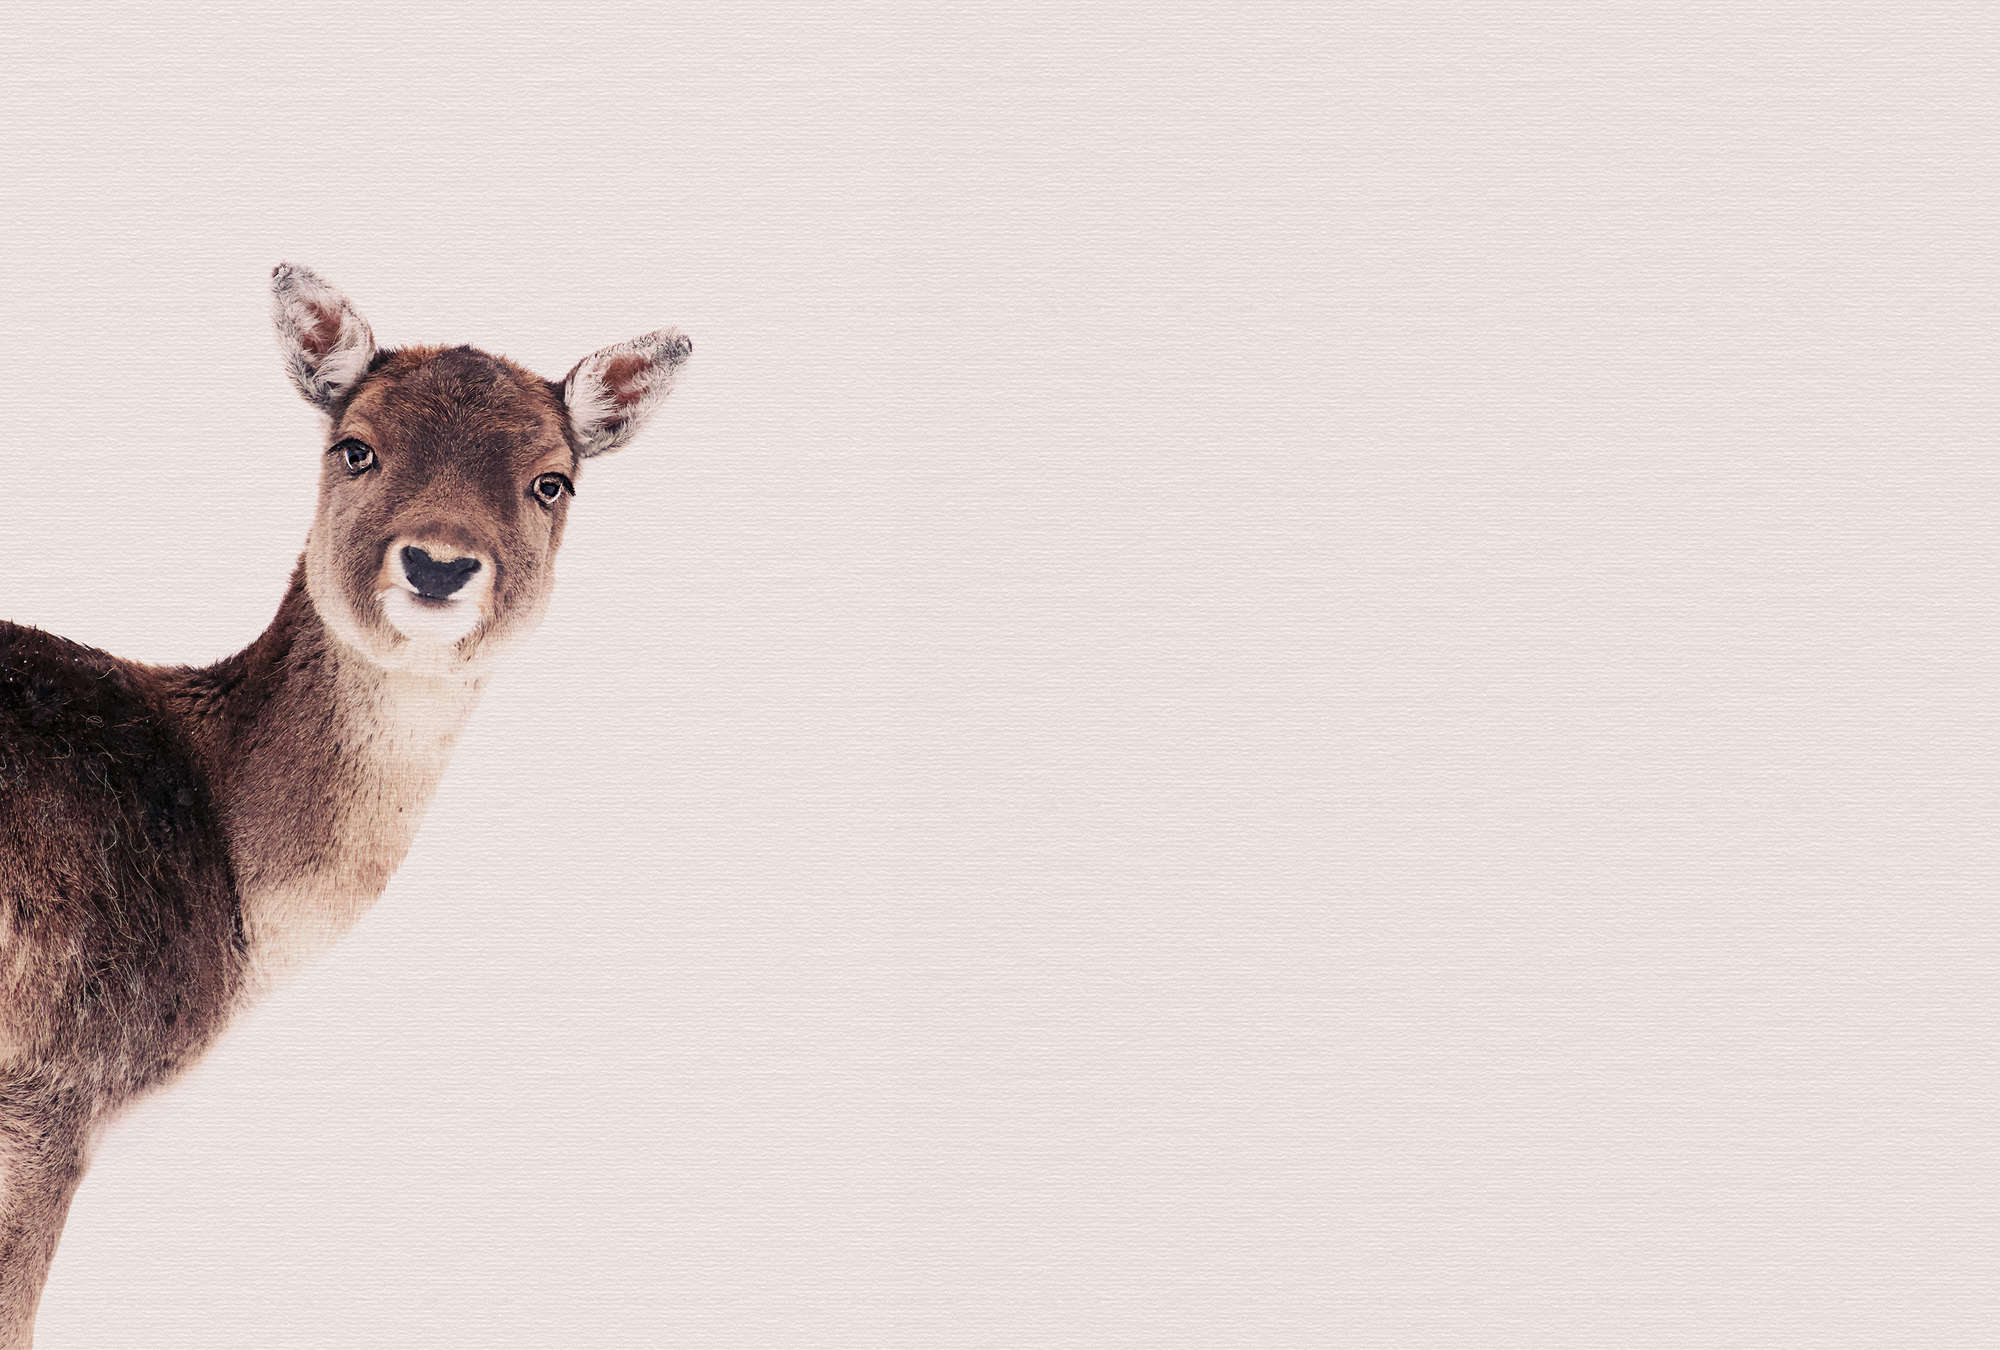             Foresta animale Carta da parati cervo in look ritratto seppia
        